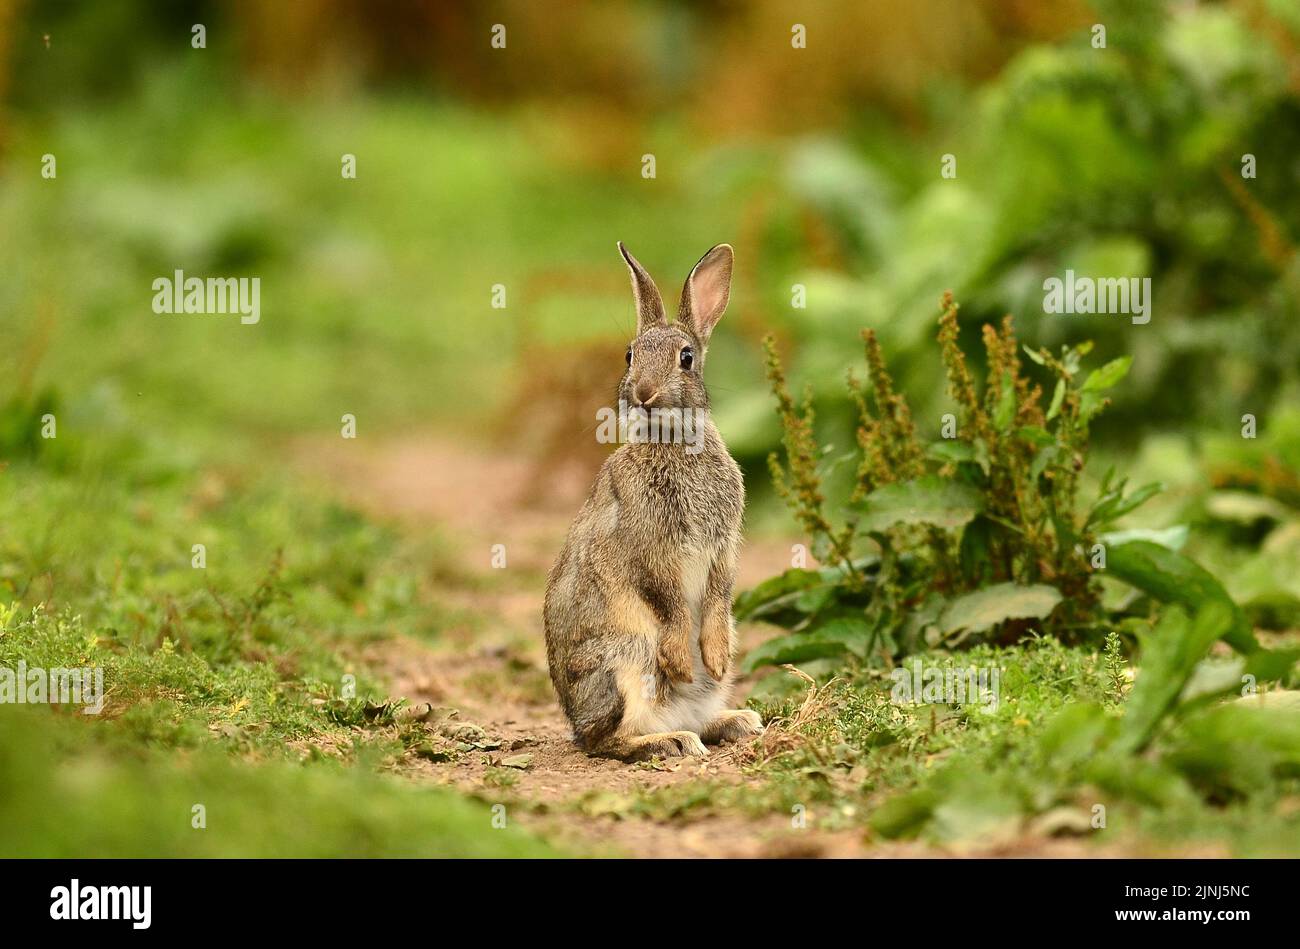 Conejo joven de pie en los pies traseros en postura de alerta Foto de stock